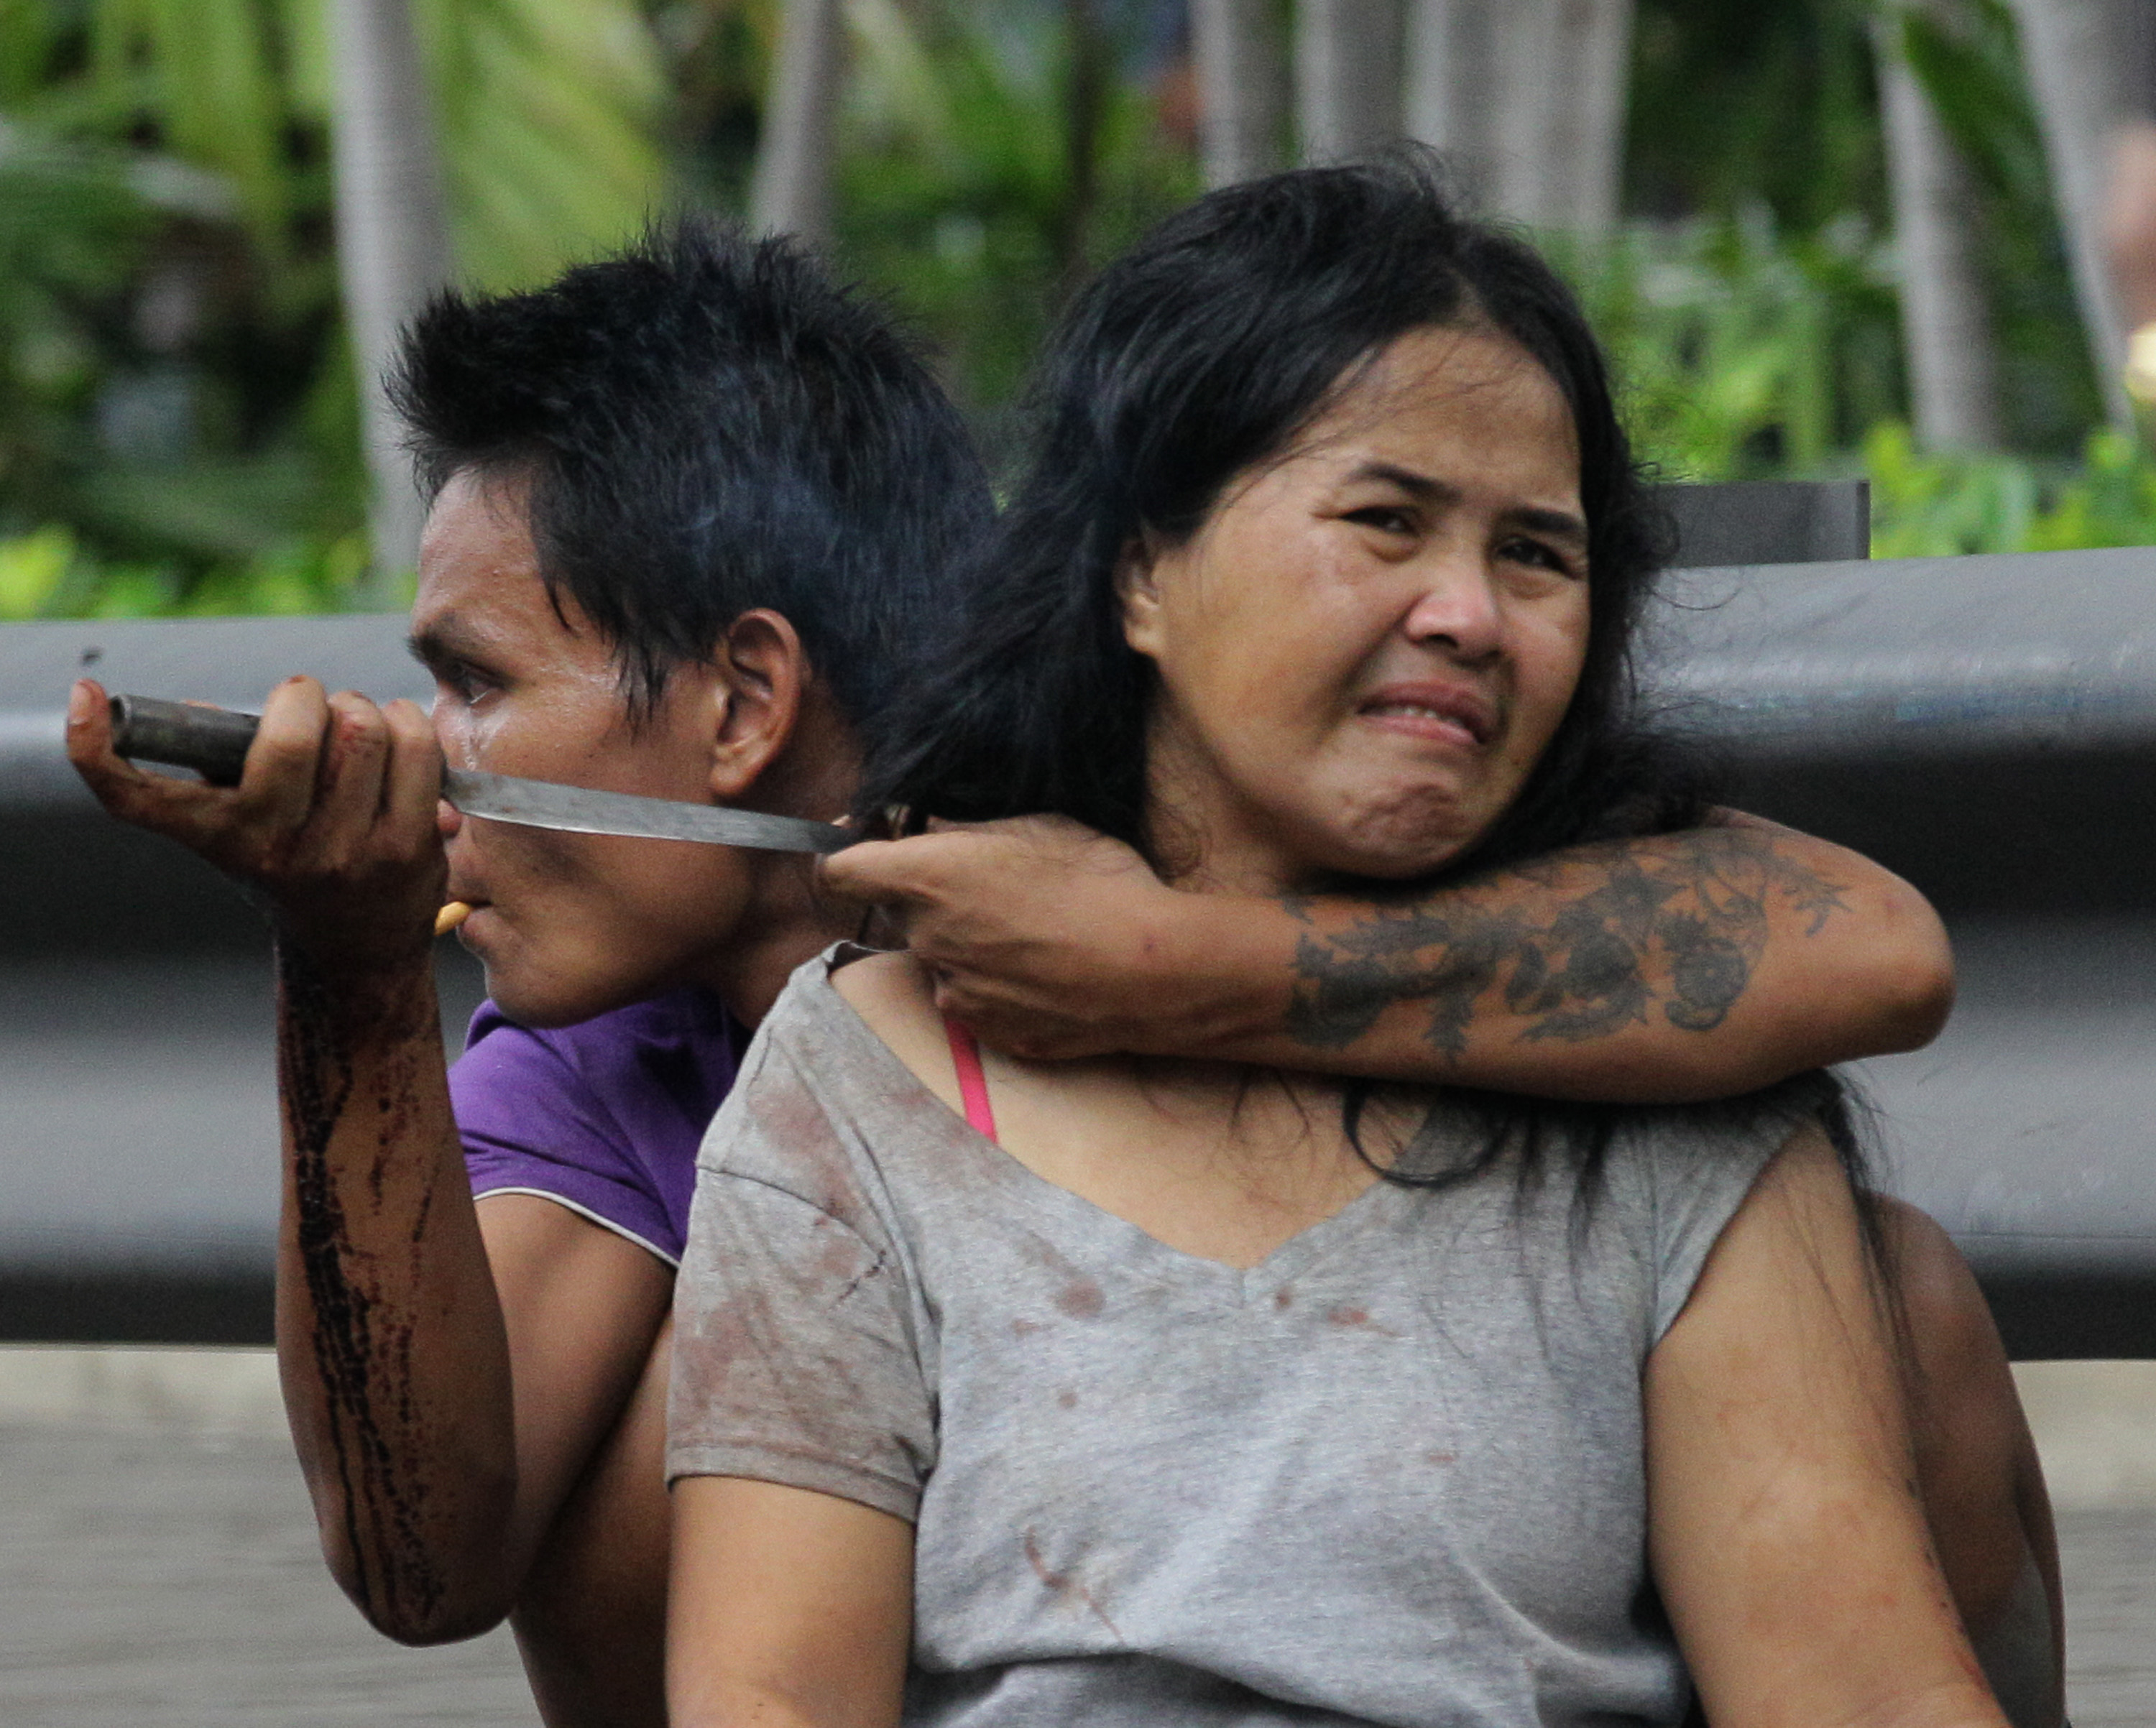 30-årige Sakdawut Hamsiri, 
håller en kniv mot halsen på hans hustru Thawee Naiyanit 
på en gata i Bangkok.